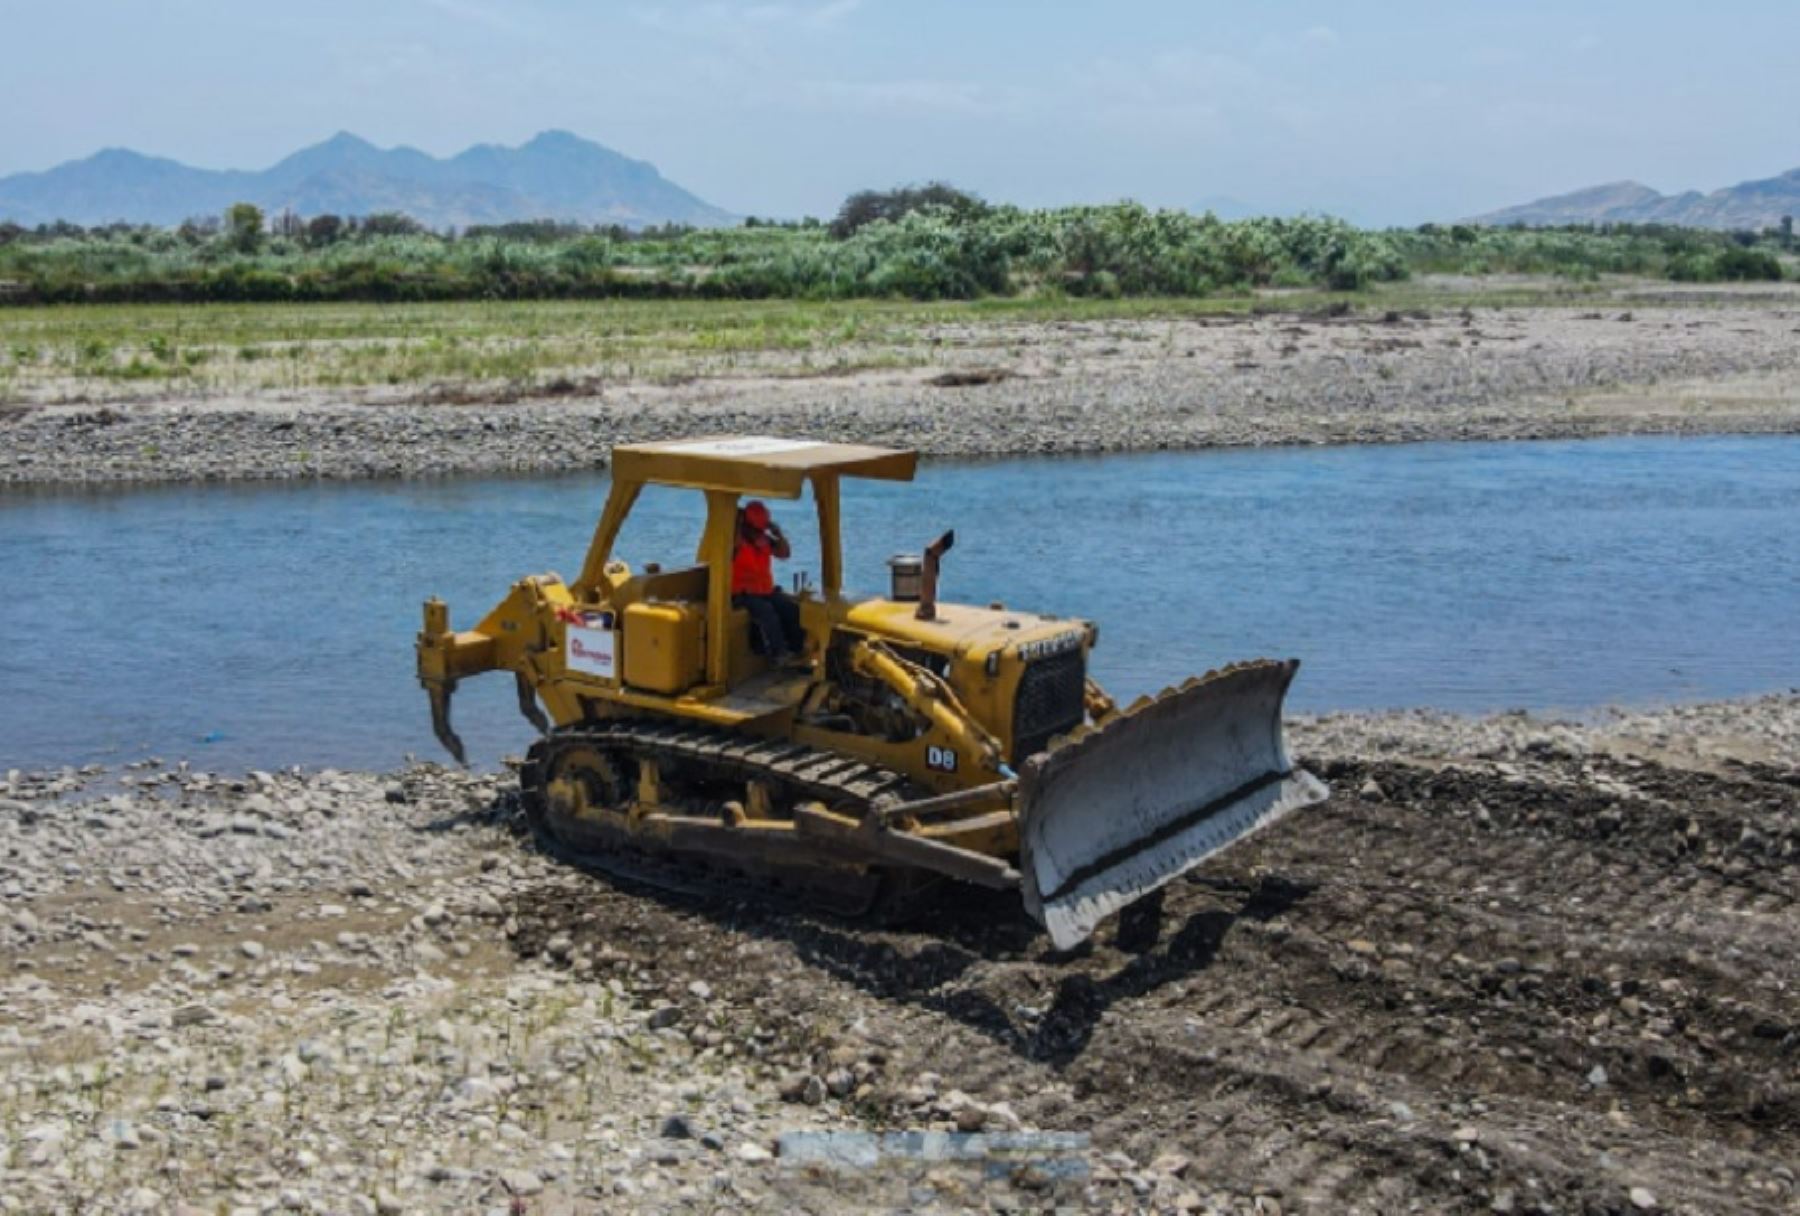 Con el objetivo de prevenir los efectos del fenómeno de El Niño global, la Autoridad para la Reconstrucción con Cambios (ARCC) inició los trabajos de limpieza y descolmatación en ambas márgenes del río Chancay, distrito de Chongoyape, provincia de Chiclayo, región Lambayeque.